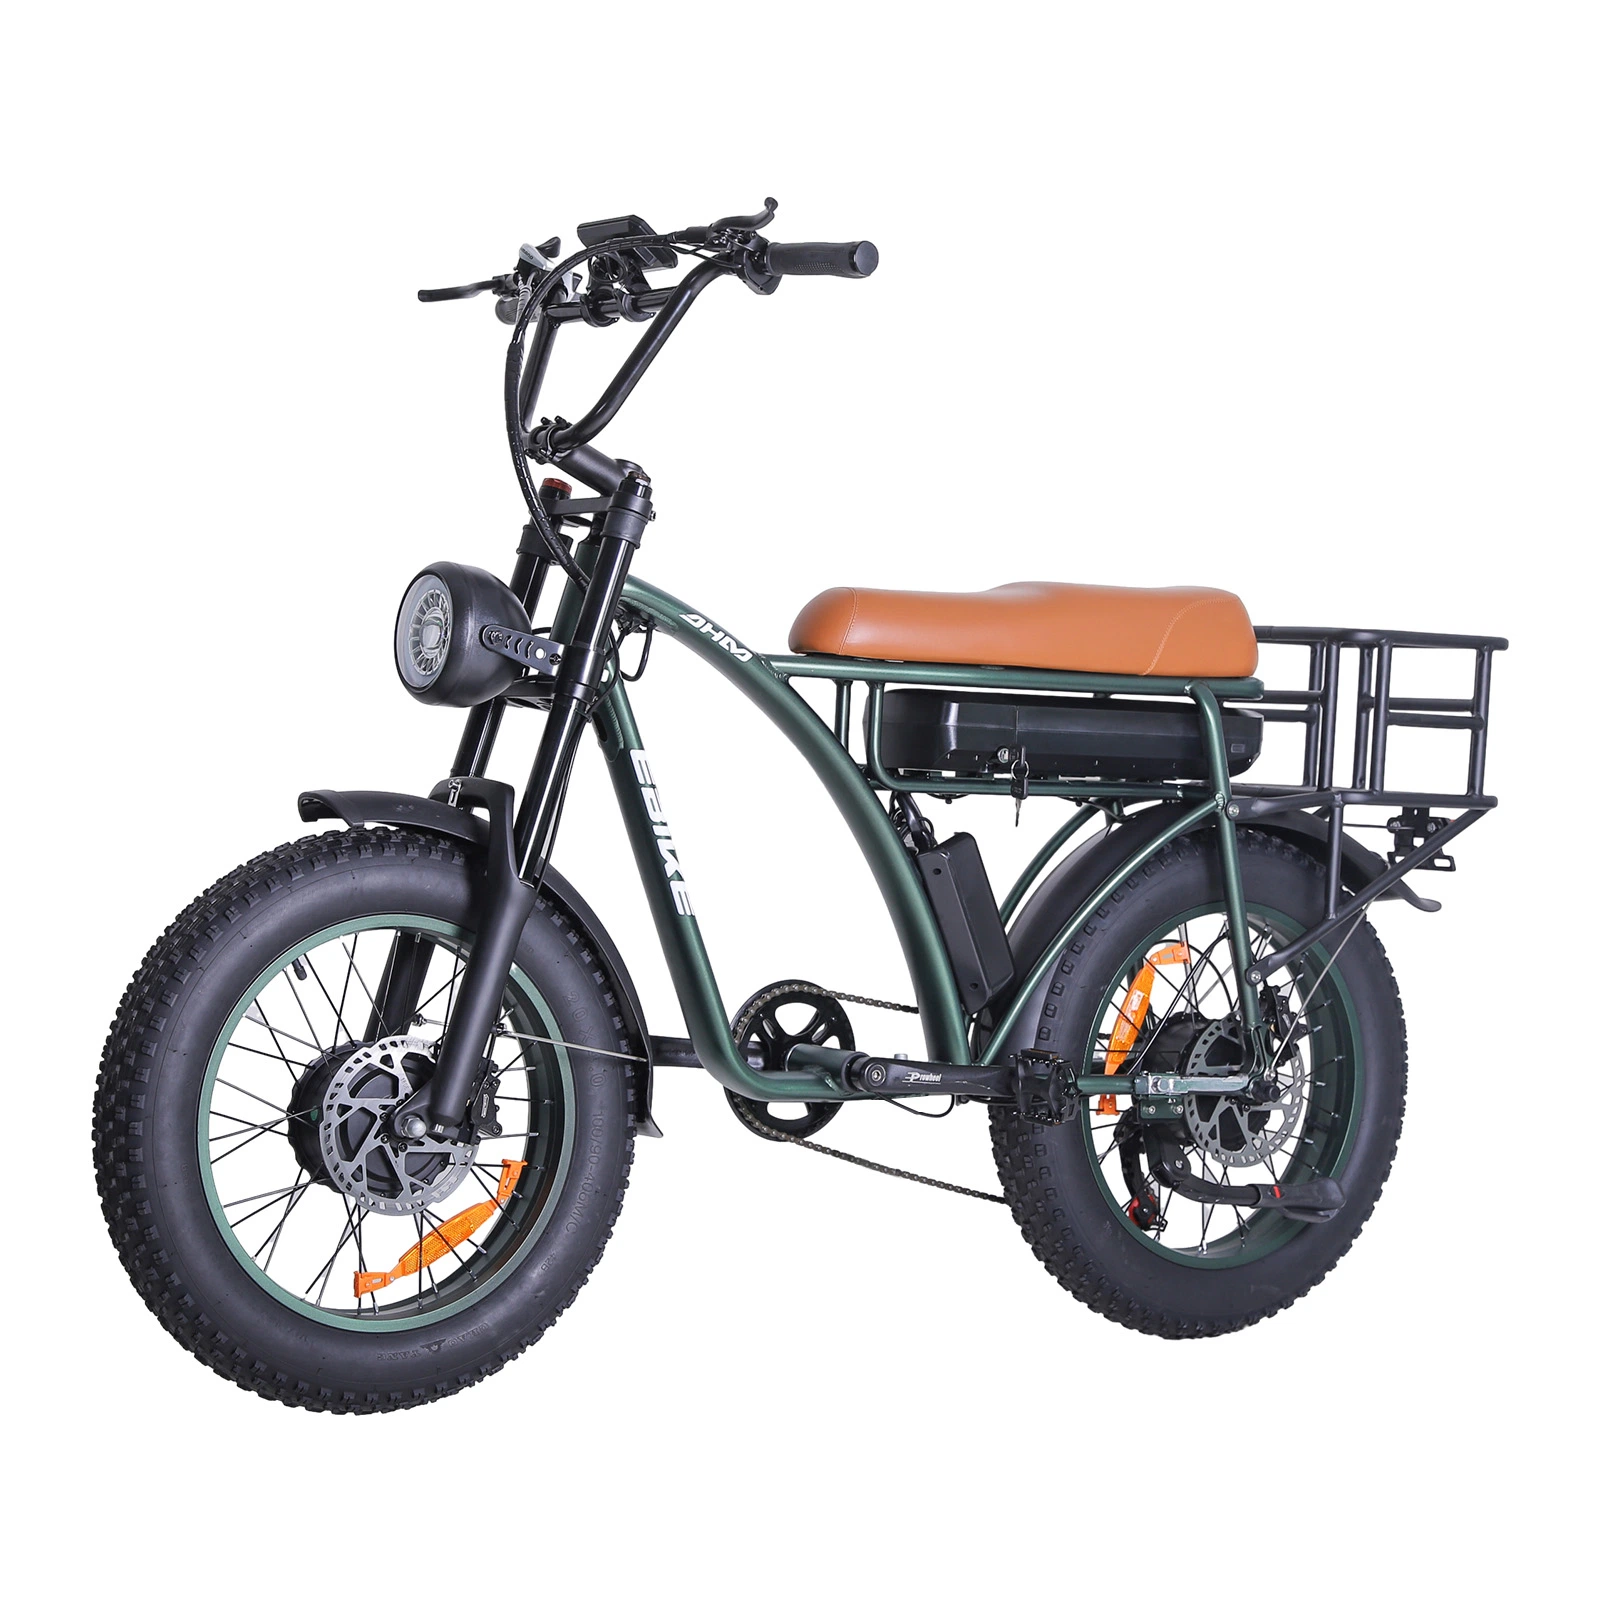 دراجة كهربائية للبالغين بمحرك 1000 واط وإطارات سميكة بحجم 20 × 4 بوصة للجبال والتضاريس الوعرة بمدى 50 ميلاً وبطارية 48 فولت.